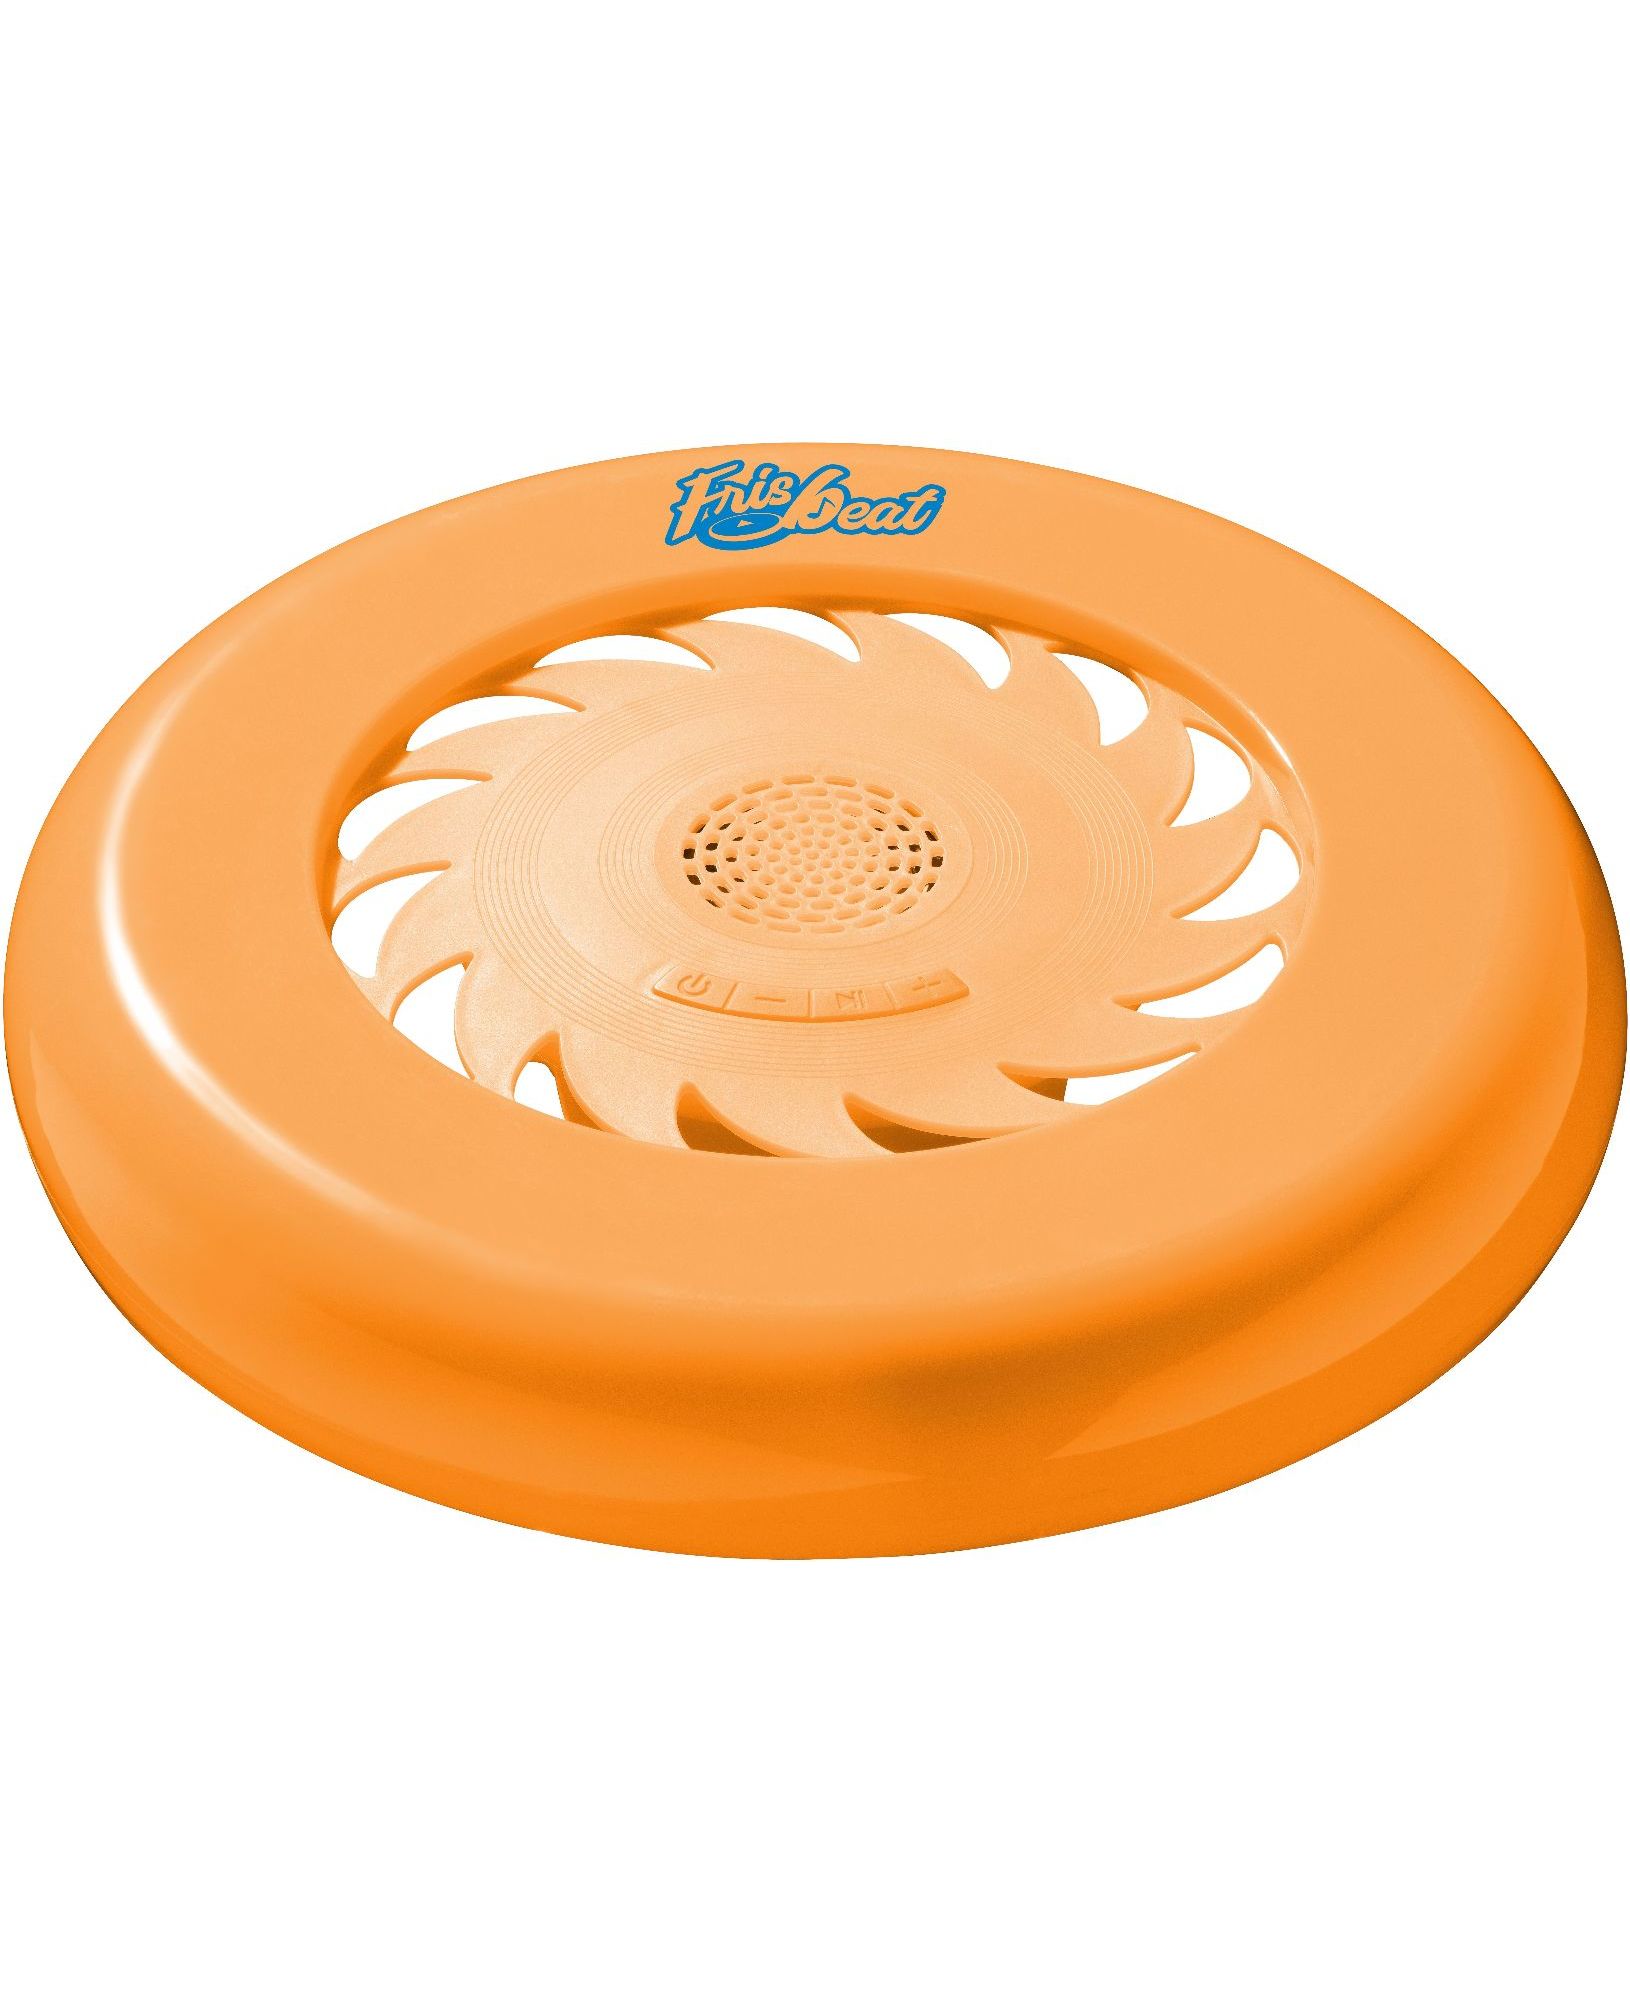 Frisbeat, speaker frisbee BT, orange